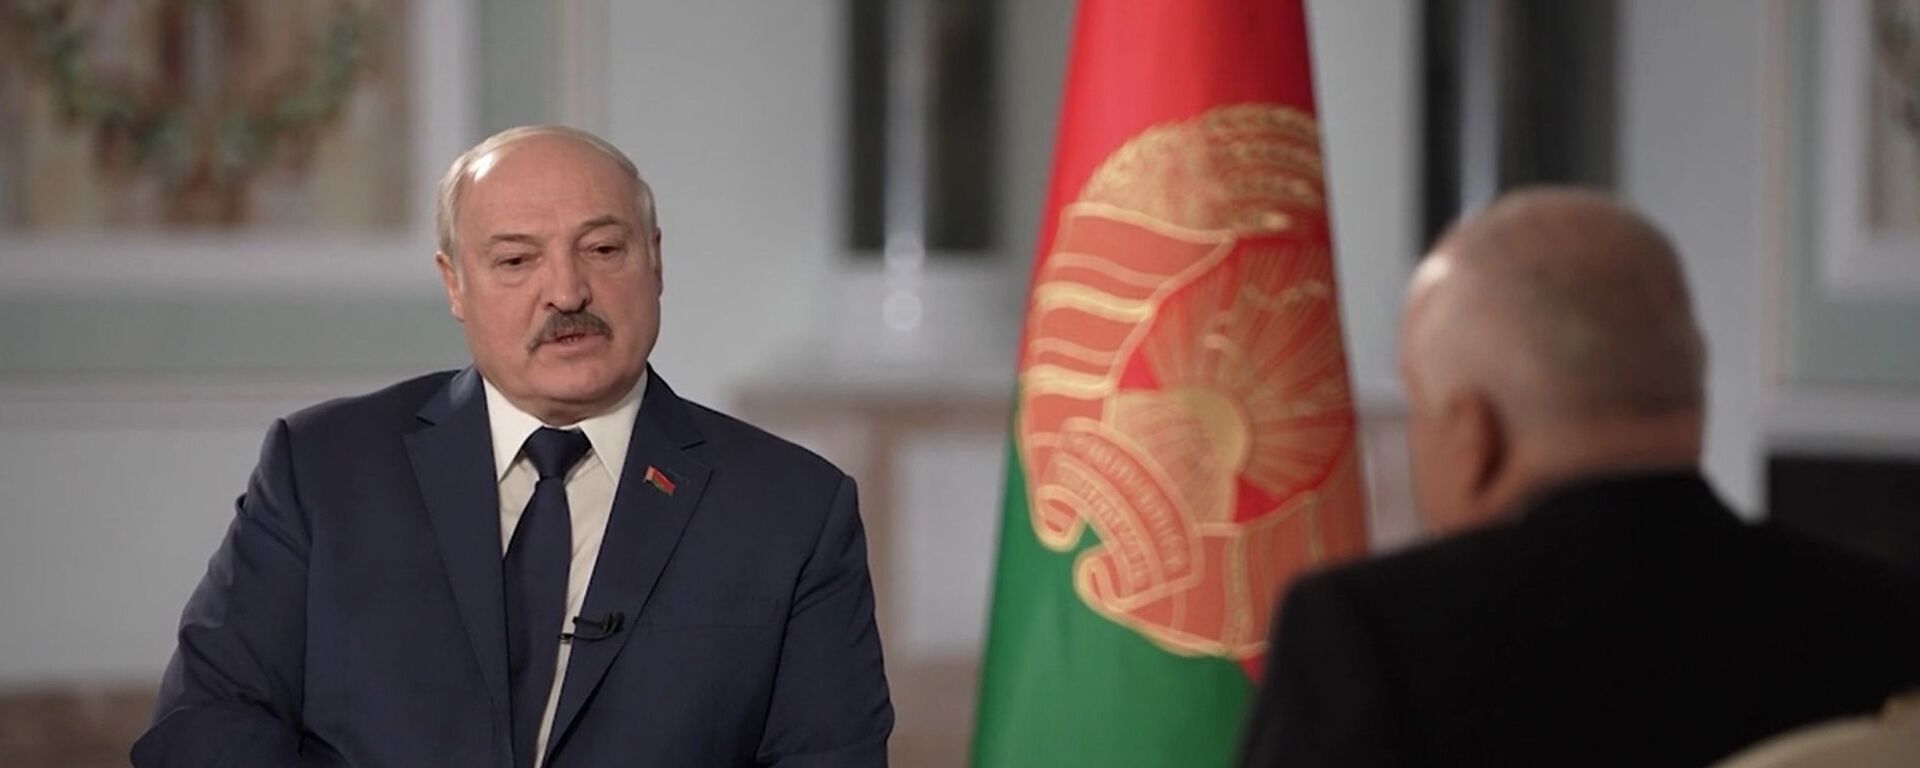 Alexander Lukashenko trong một cuộc phỏng vấn với Dmitry Kiselev - Sputnik Việt Nam, 1920, 30.11.2021